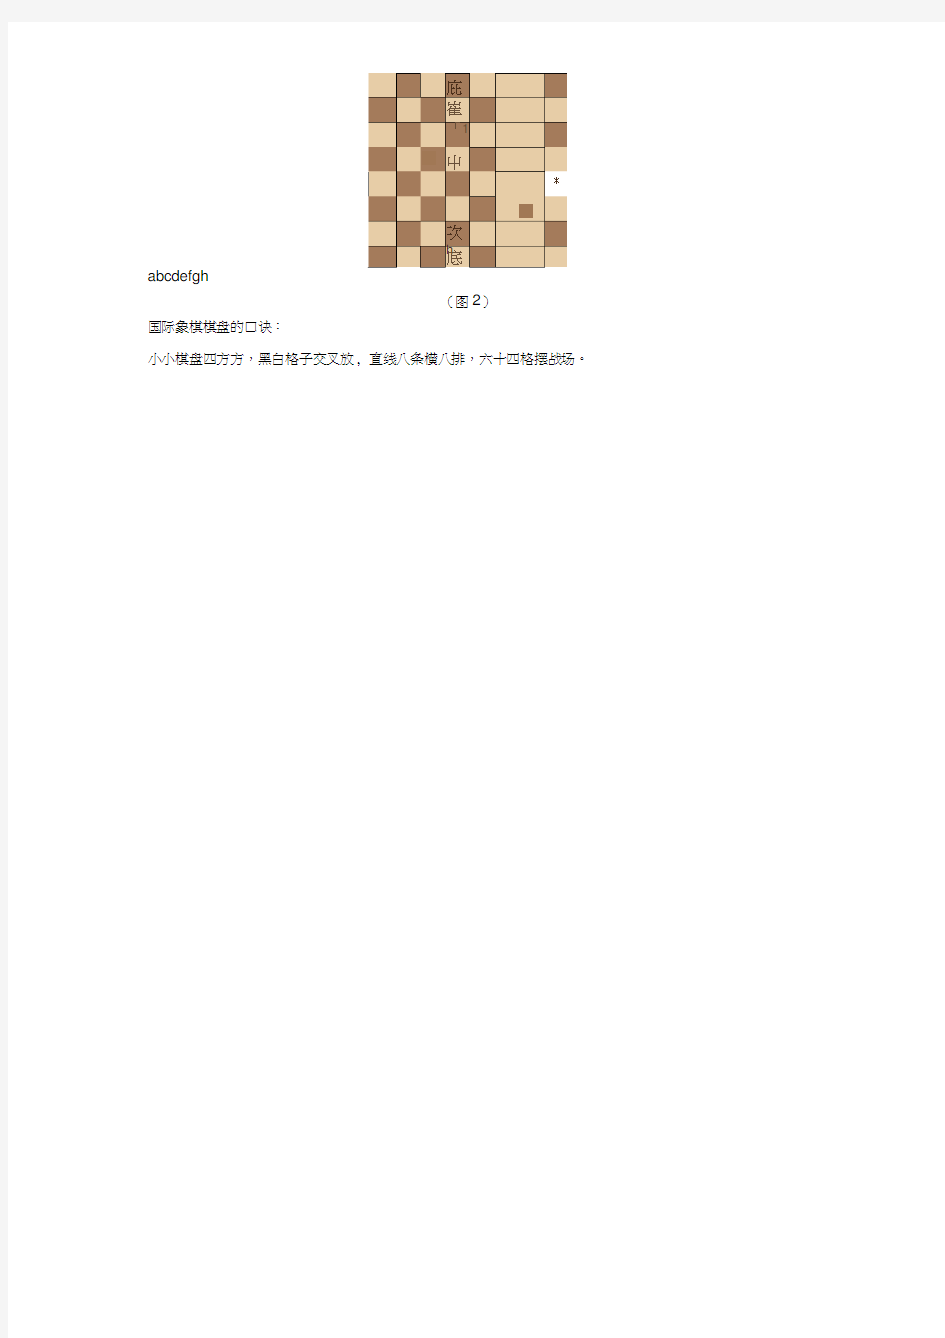 第一课国际象棋基础知识